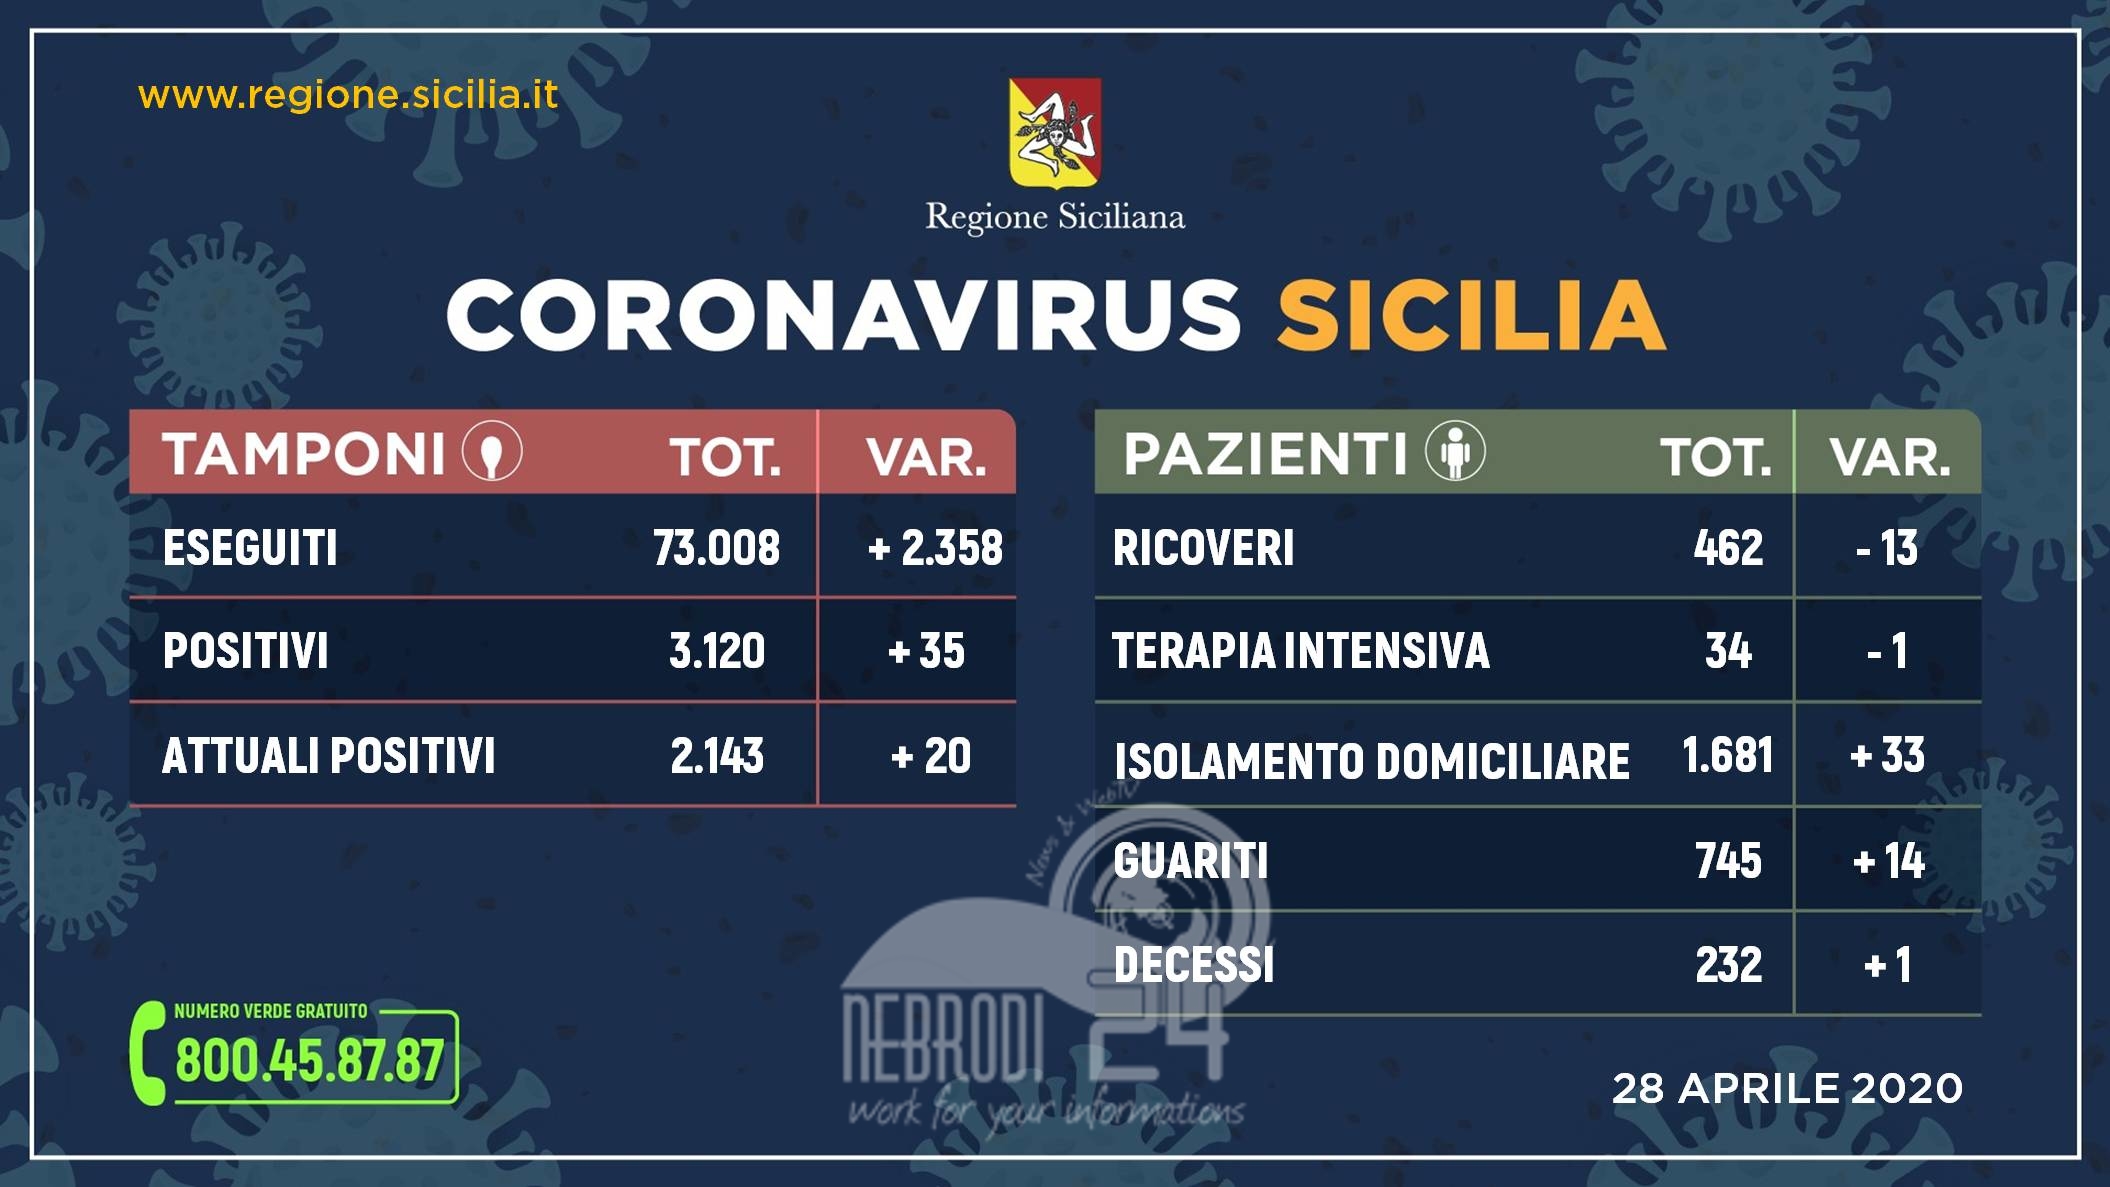 Coronavirus: in Sicilia situazione stabile, meno ricoveri e più guariti